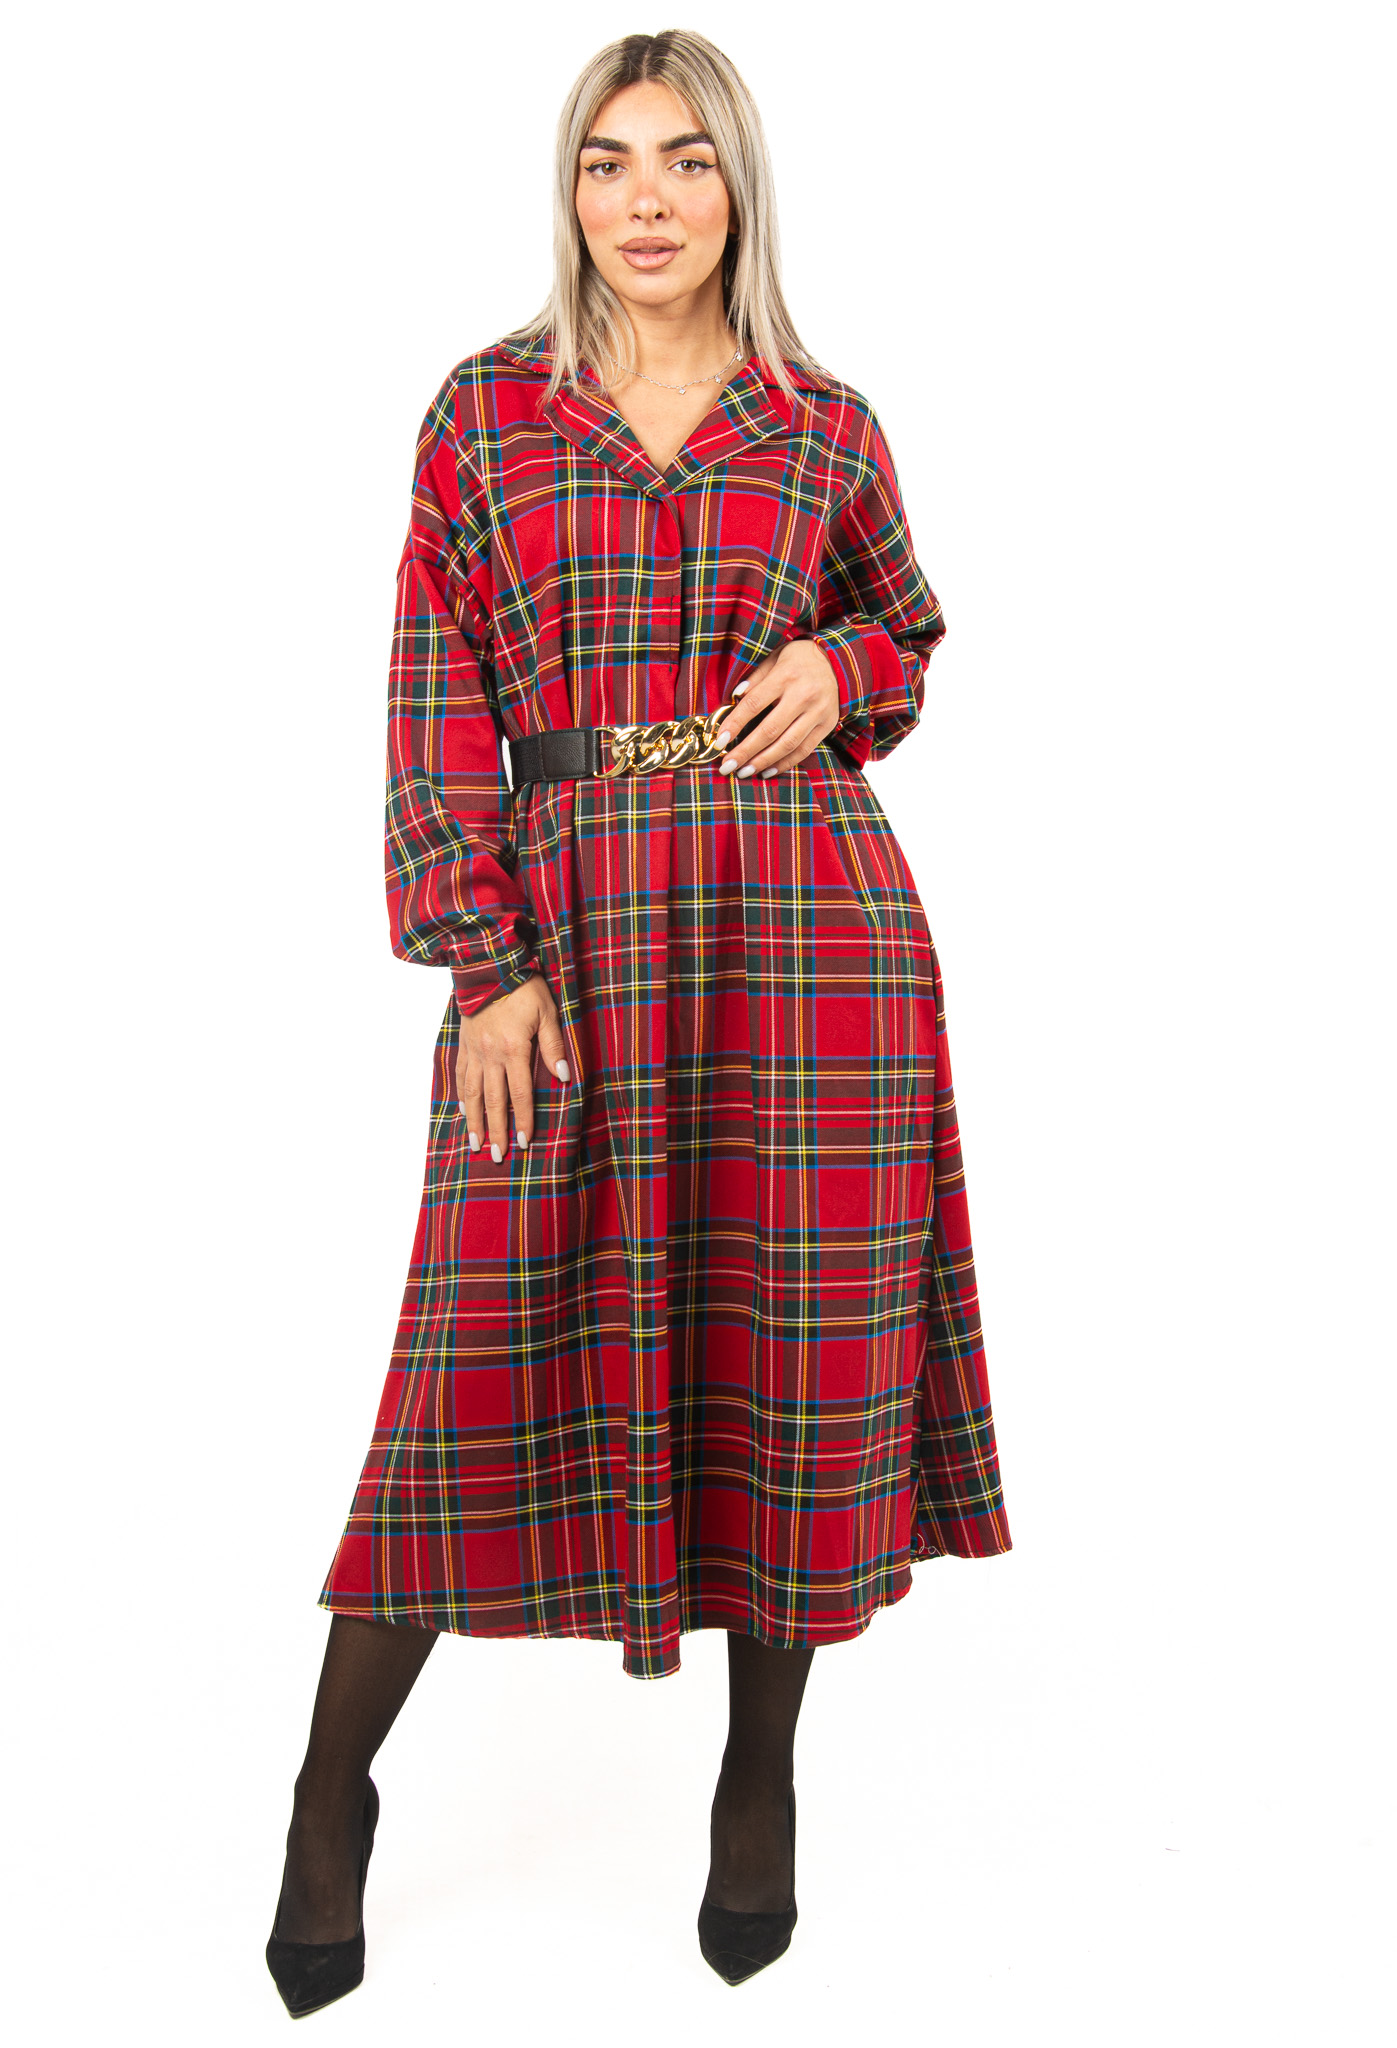 Φόρεμα Σκωτσέζικο Καρό με Ζώνη Κόκκινο | EllenBoutique